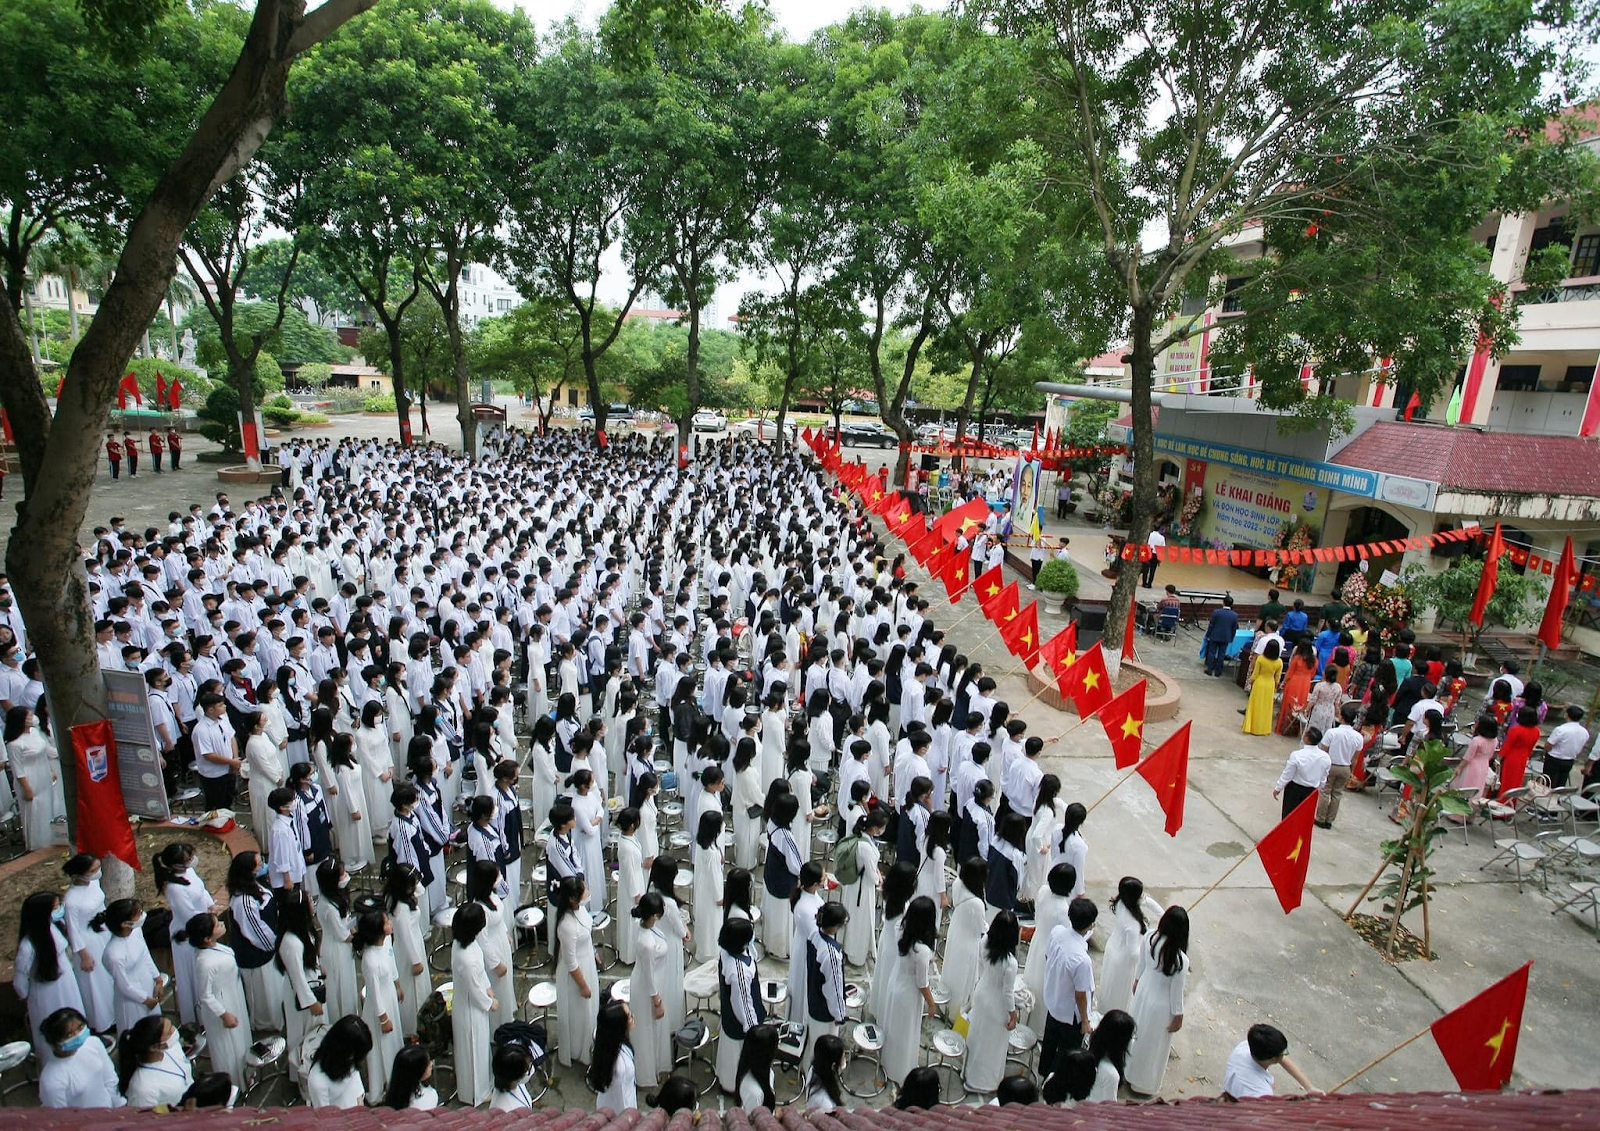 Trường THPT Lý Thường Kiệt là trường có điểm đầu vào cao thứ hai sau trường THPT Nguyễn Gia Thiều tại khu vực Long Biên, Hà Nội